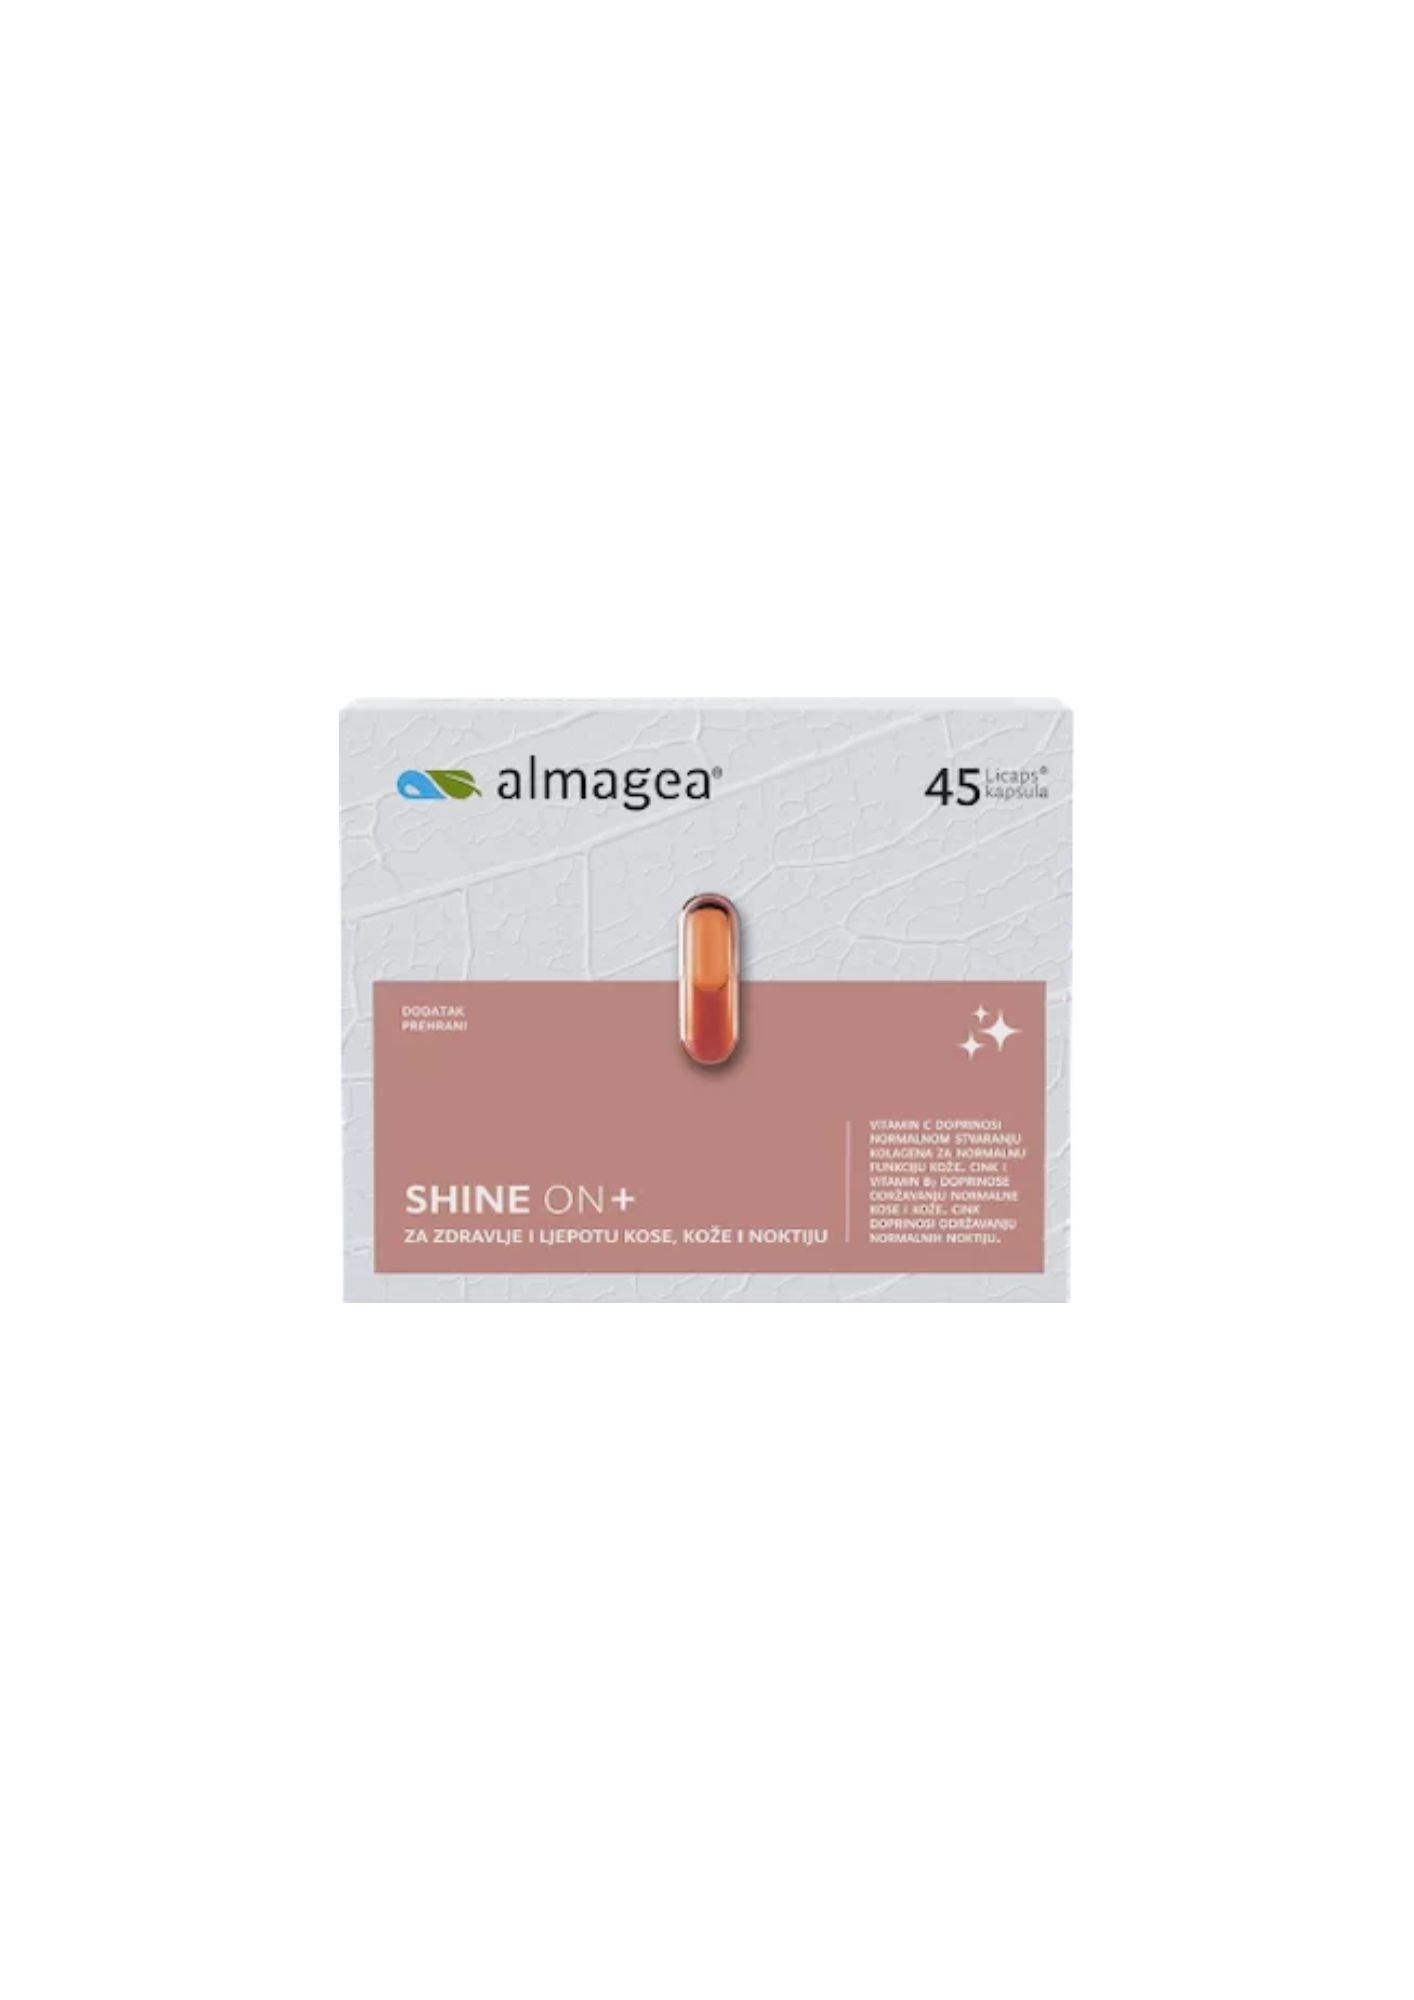 almagea shine on suplementi za kosu kožu i nokte